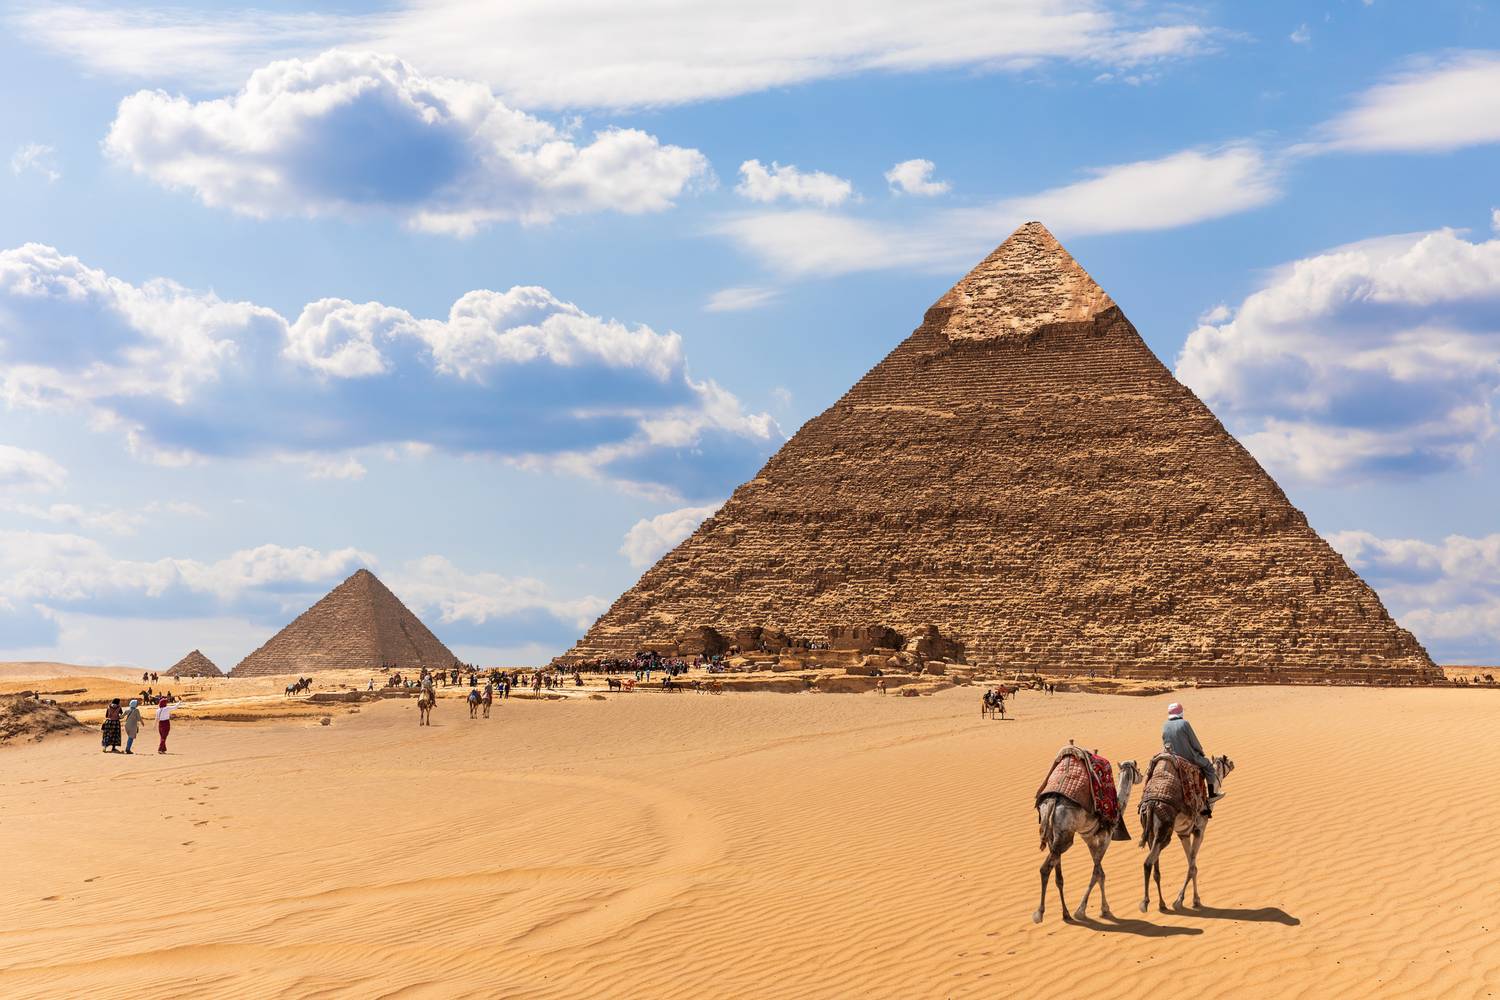 A legkedveltebb téli úti célok listájában a Kiwi.com előzetes foglalási adatai alapján az élen Egyiptom szerepel. Az országban sokan a gízai piramisokra, a nagy szfinxre és a luxori templomra kíváncsiak.